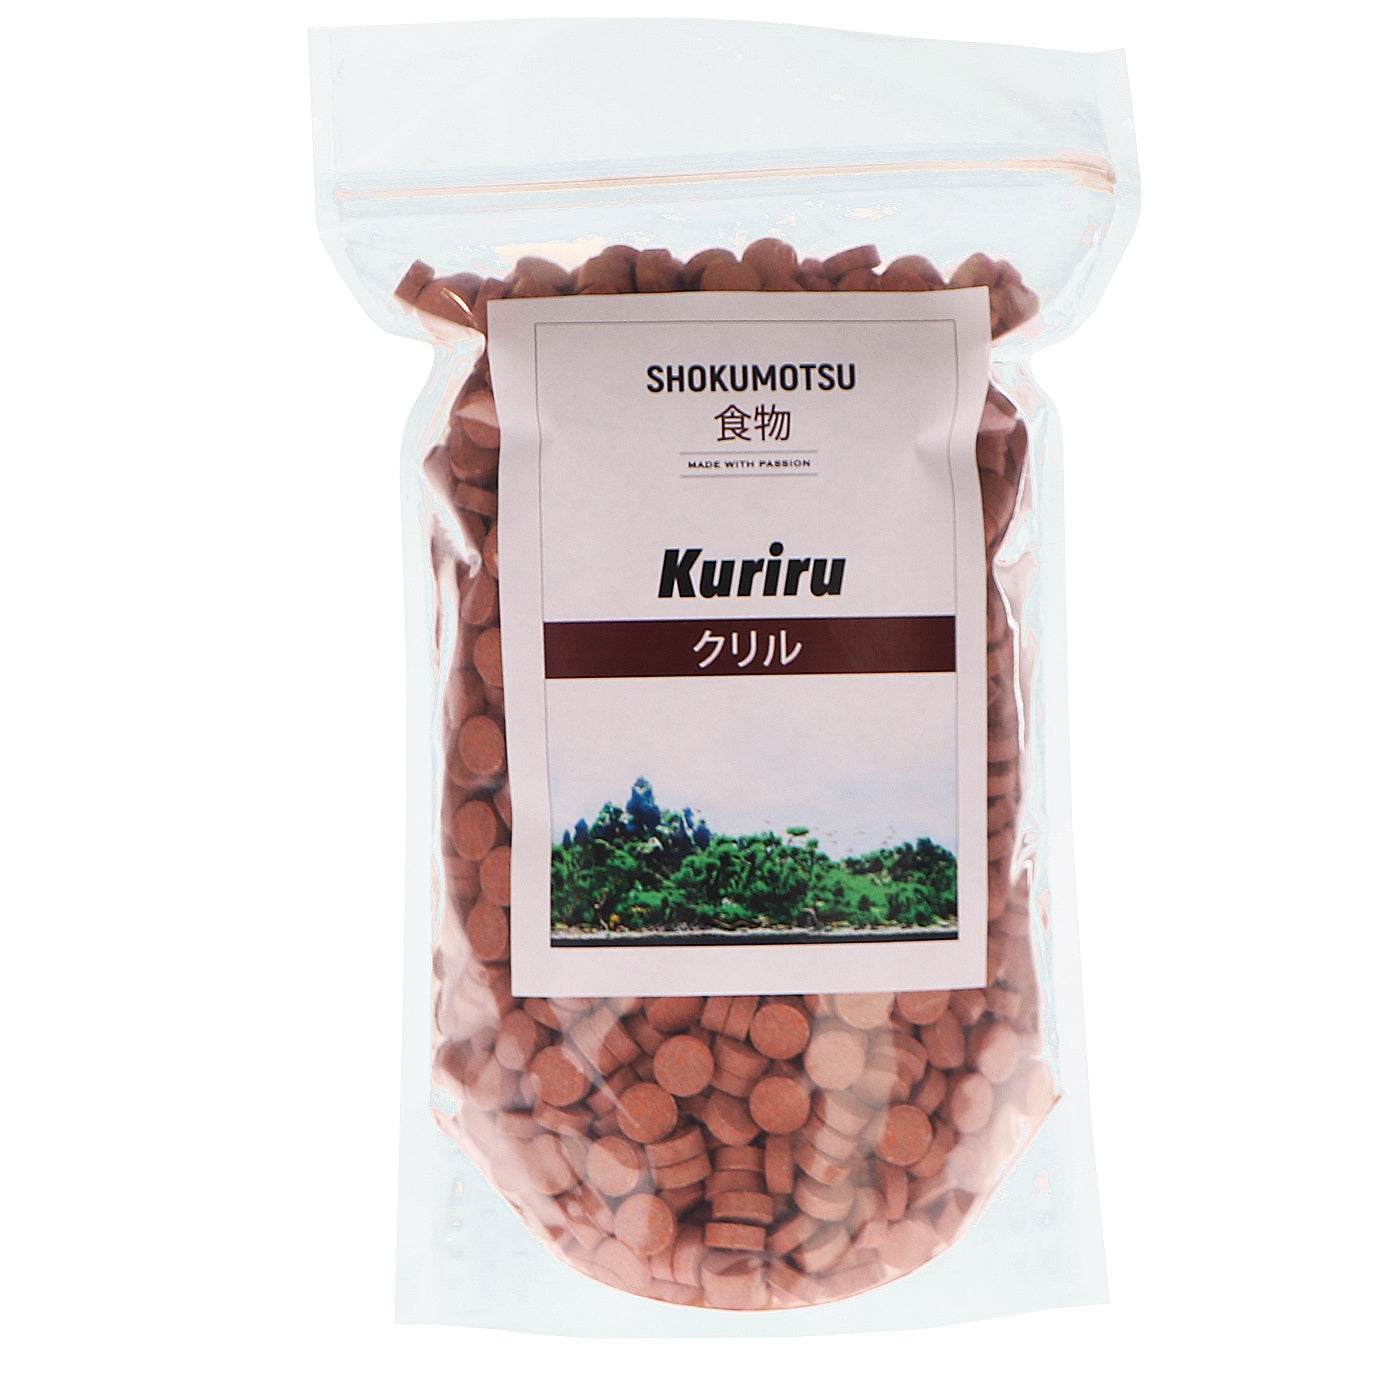 Tabletecu Krill-SHOKUMOTSU Kuriru 75 ml